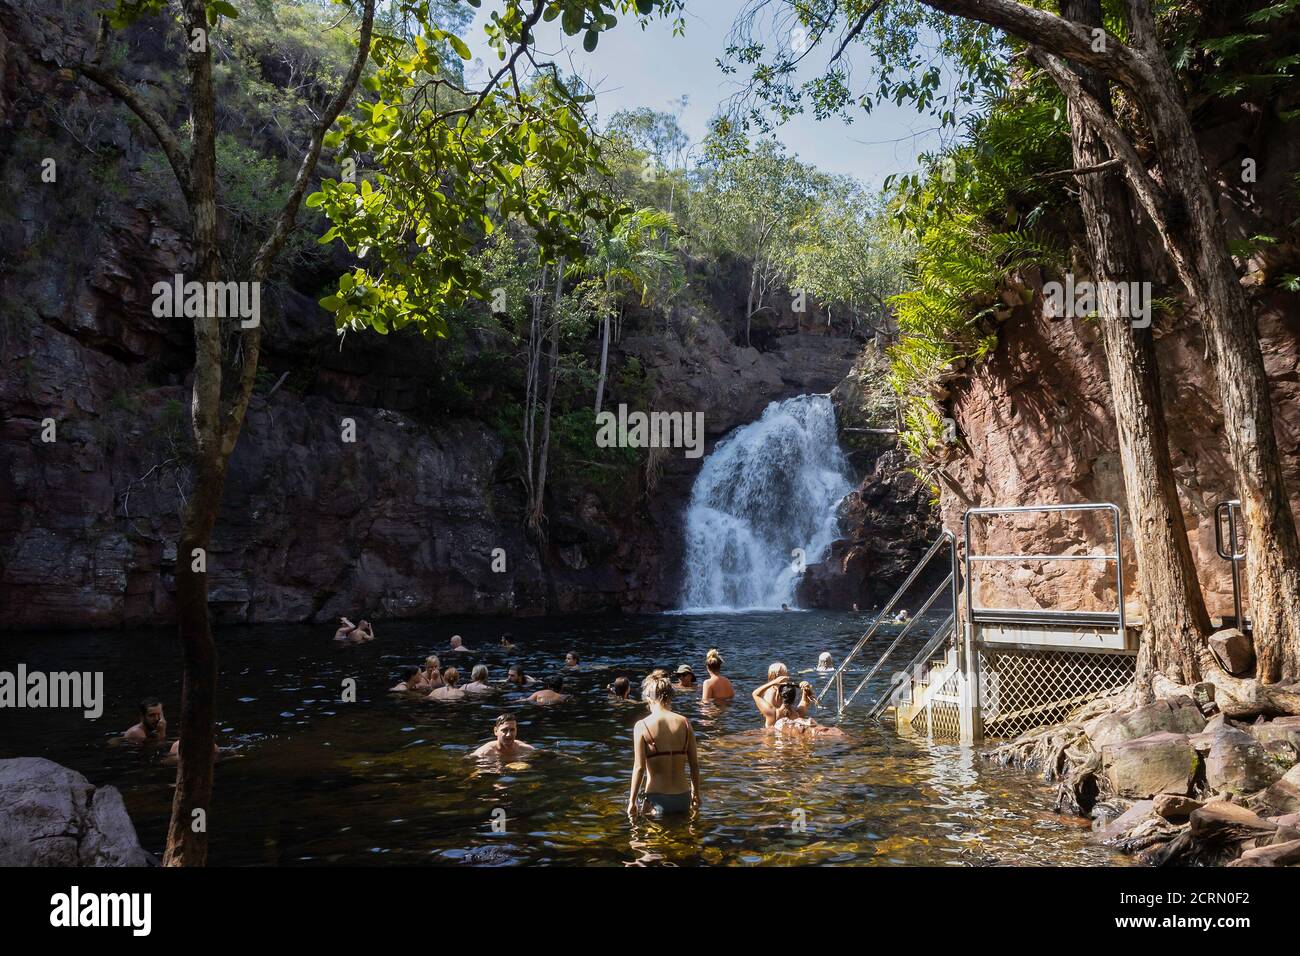 Florence Falls, Australien - 15. März 2020: Touristen baden im Tauchbecken am Fuße der Florence Falls, dem nördlichen Gebiet, Australien. Stockfoto